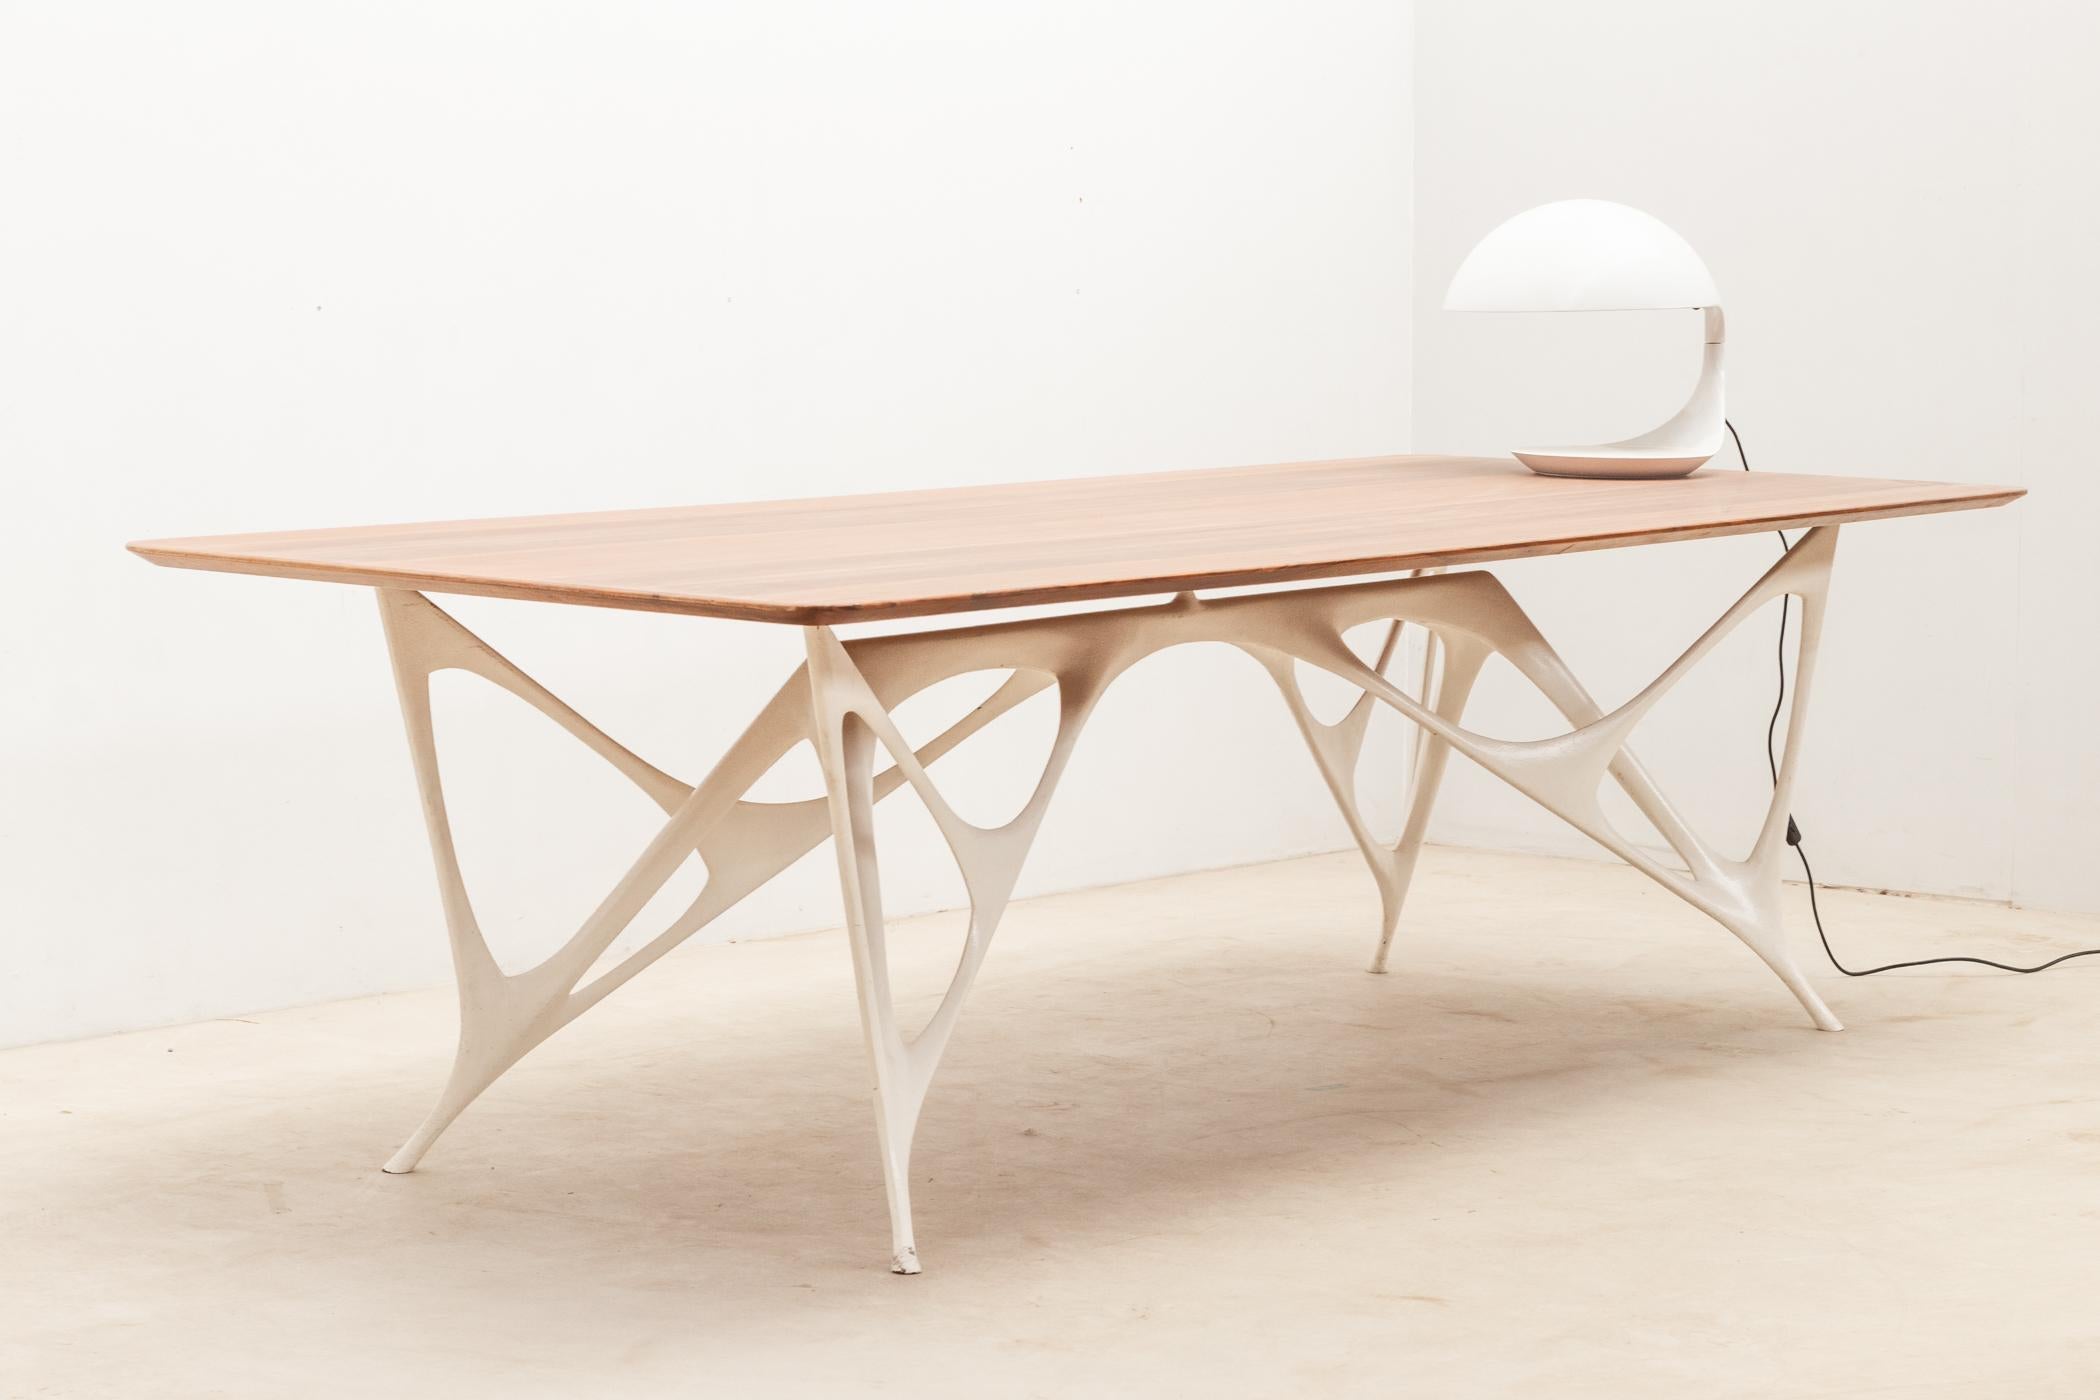 Architectural table by Le Opere e i Giorni studio For Sale 1